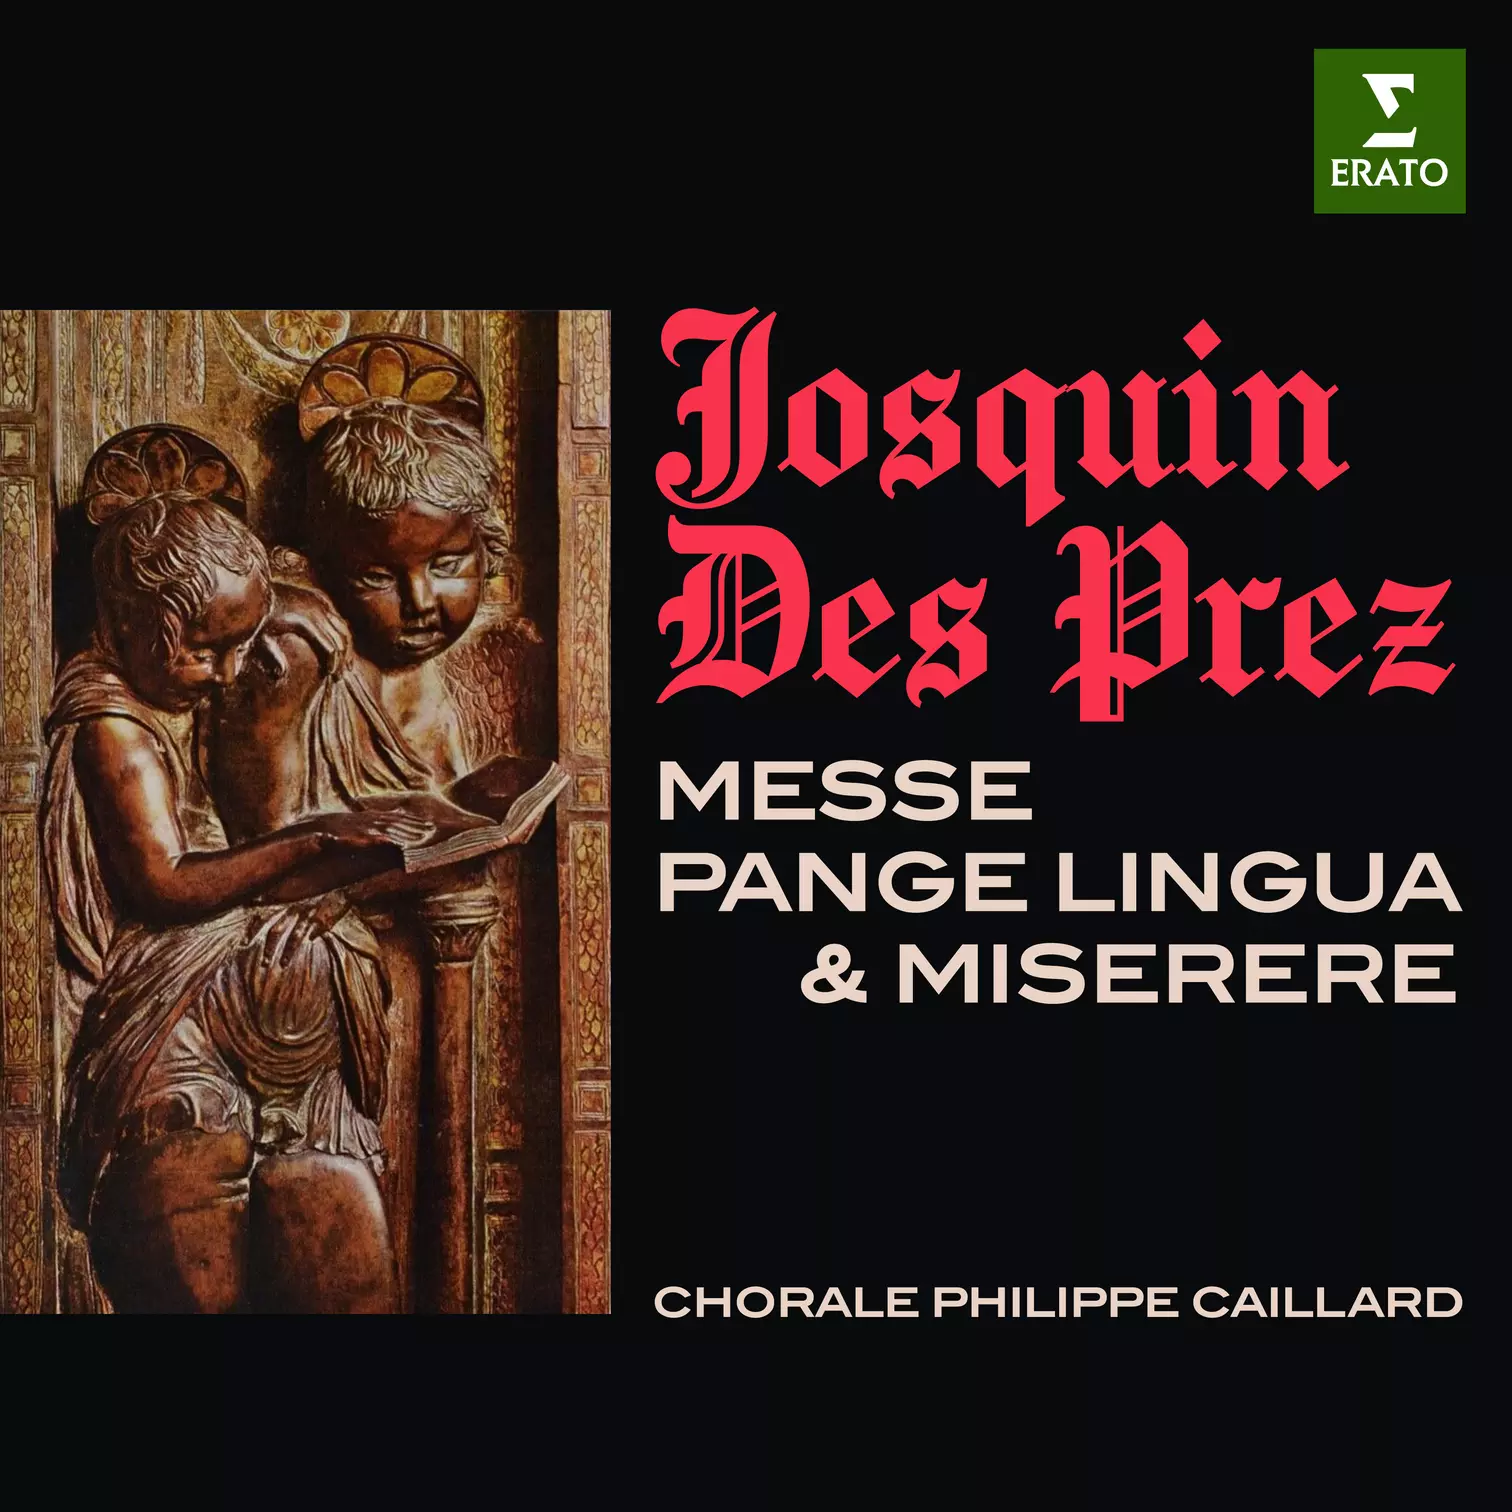 Josquin Des Prez: Messe “Pange lingua” & Miserere